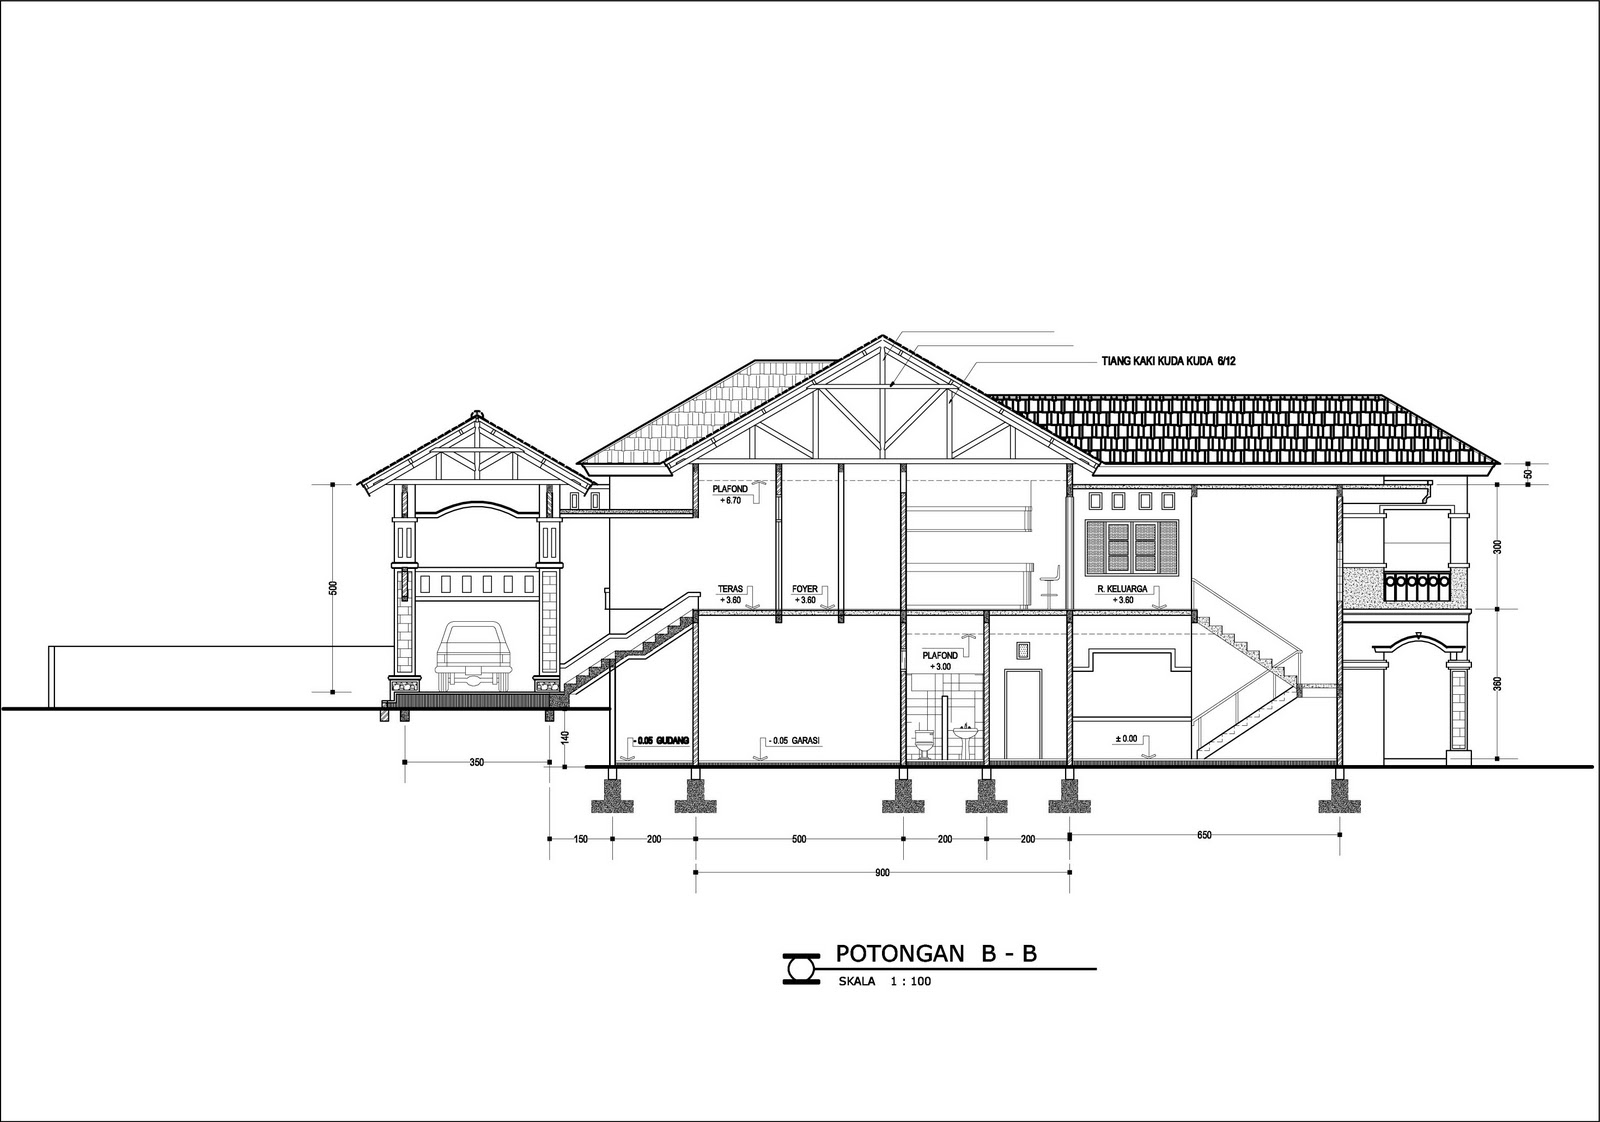 Contoh Desain Rumah DENAH RUMAH DI TANAH BERKONTUR TIPE 336 M2